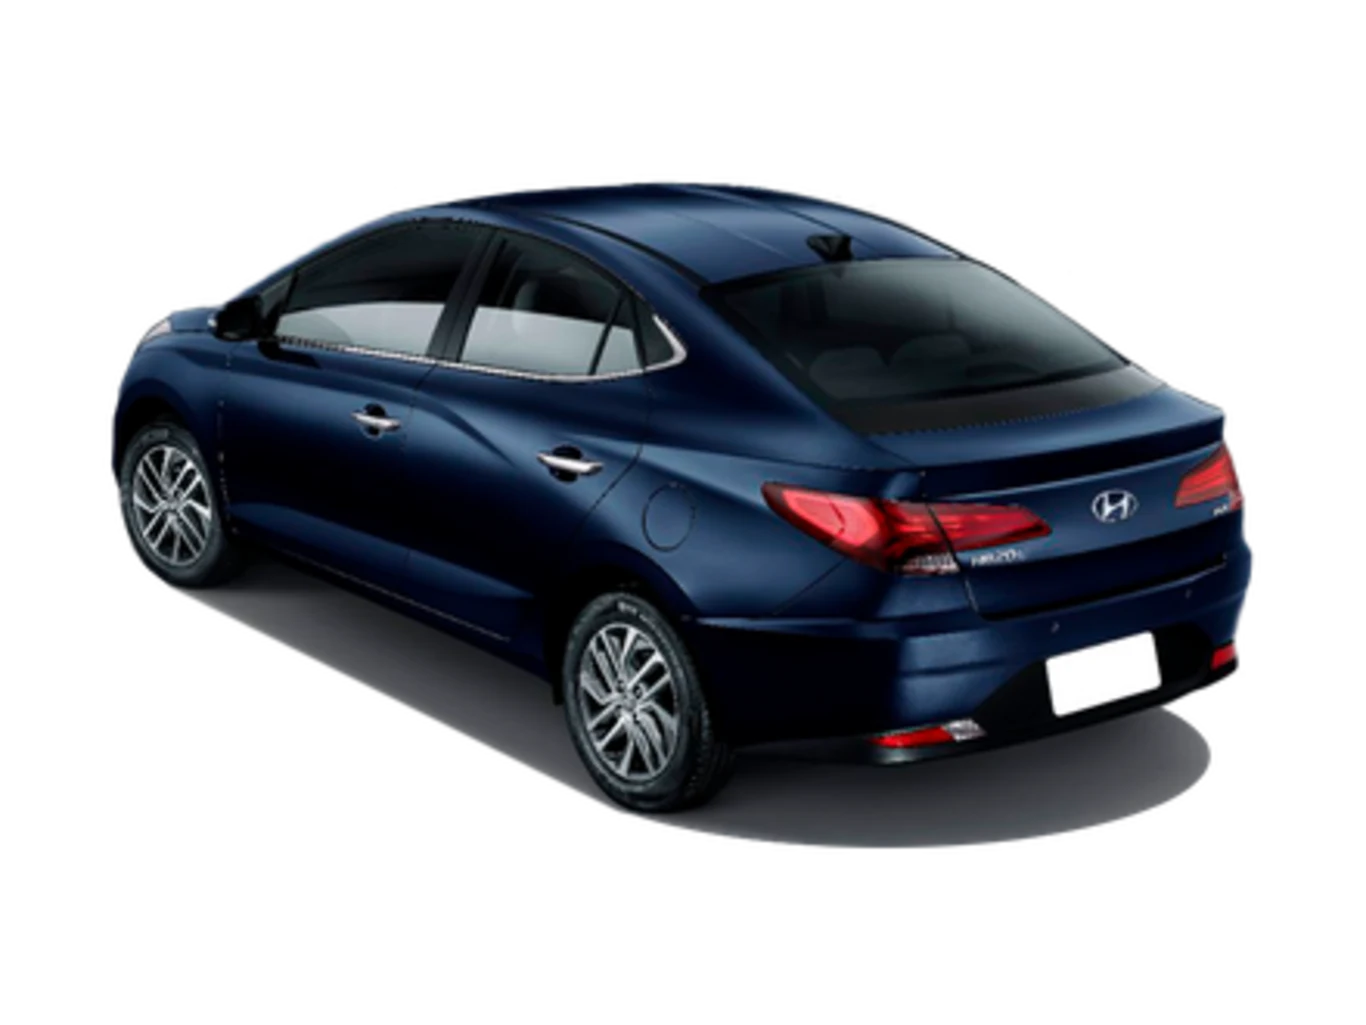 Hyundai HB20S Platinum Plus Bluelink 1.0 Turbo (Aut) (Flex)